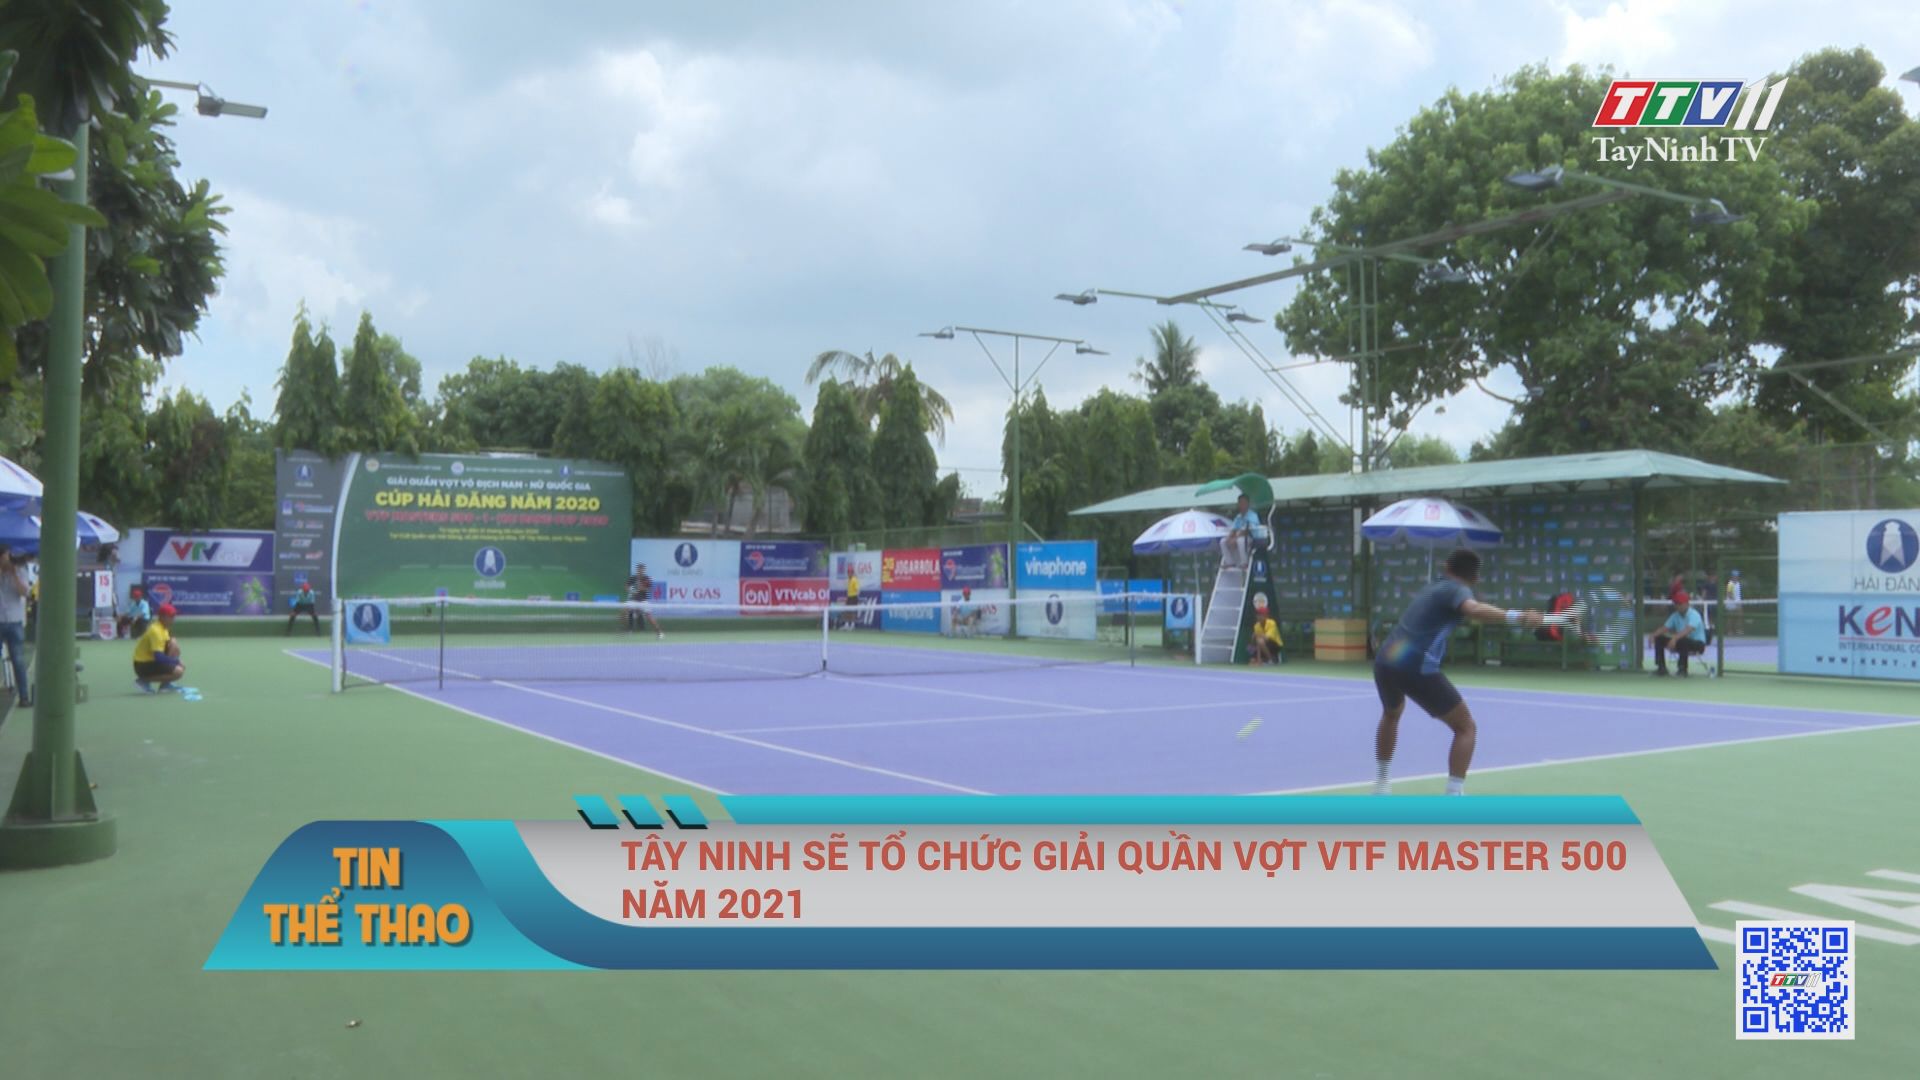 Tây Ninh sẽ tổ chức giải quần vợt VTF master 500 năm 2021 | BẢN TIN THỂ THAO | TayNinhTV